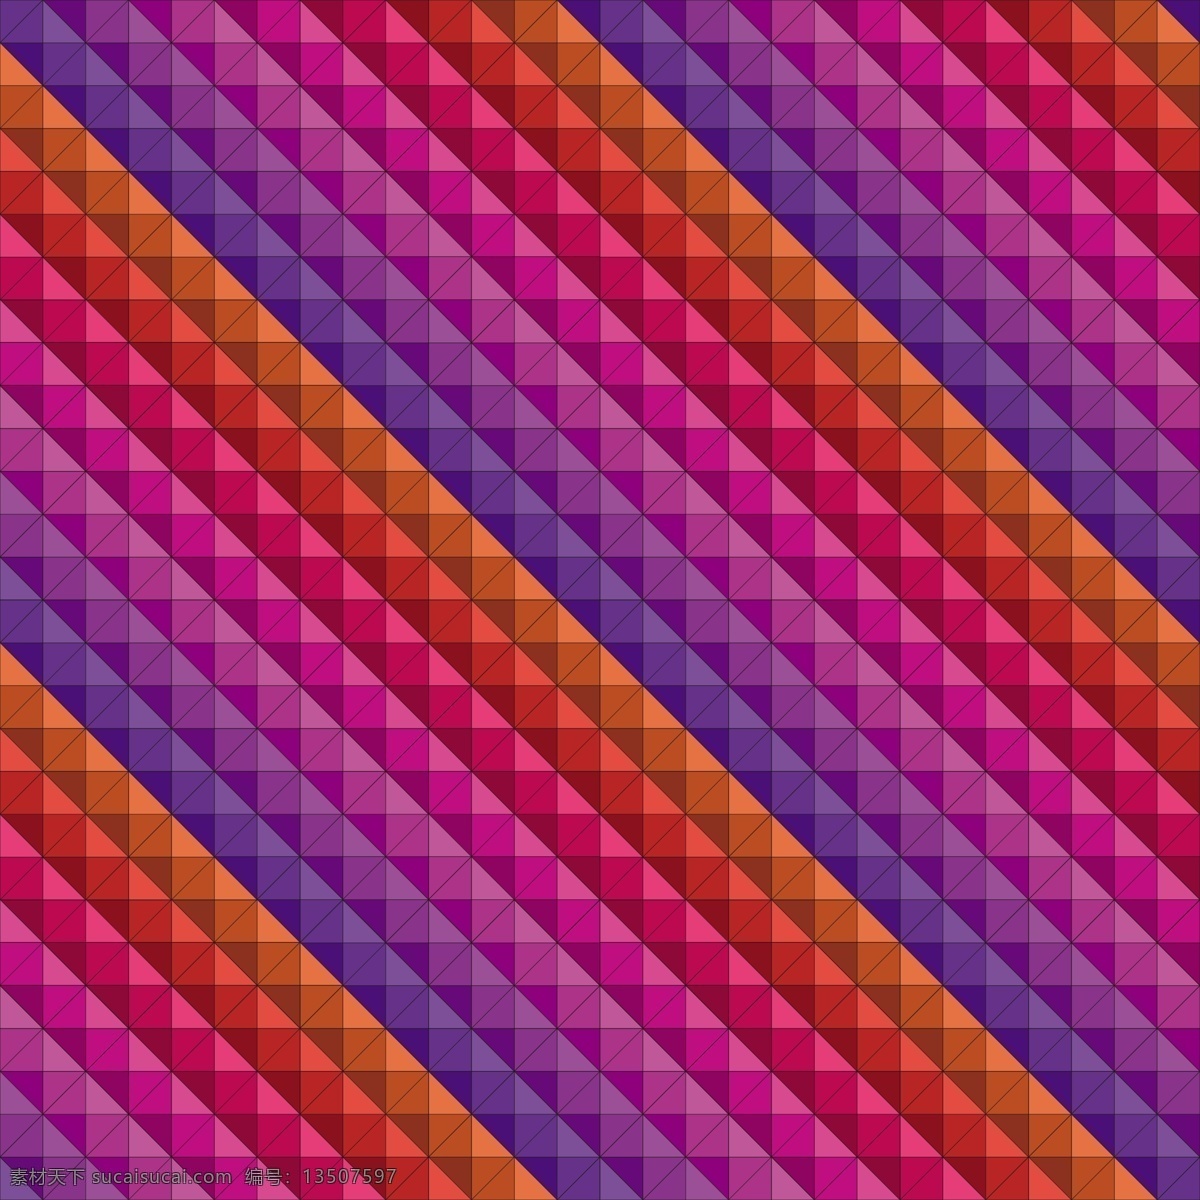 三维 立方体 模式 背景 图案 抽象的背景 抽象 几何 丰富多彩 几何背景 几何图案 形状 丰富的背景 无缝的图案 无缝 几何图形 图案背景 抽象图案 抽象的形状 颜色 紫色